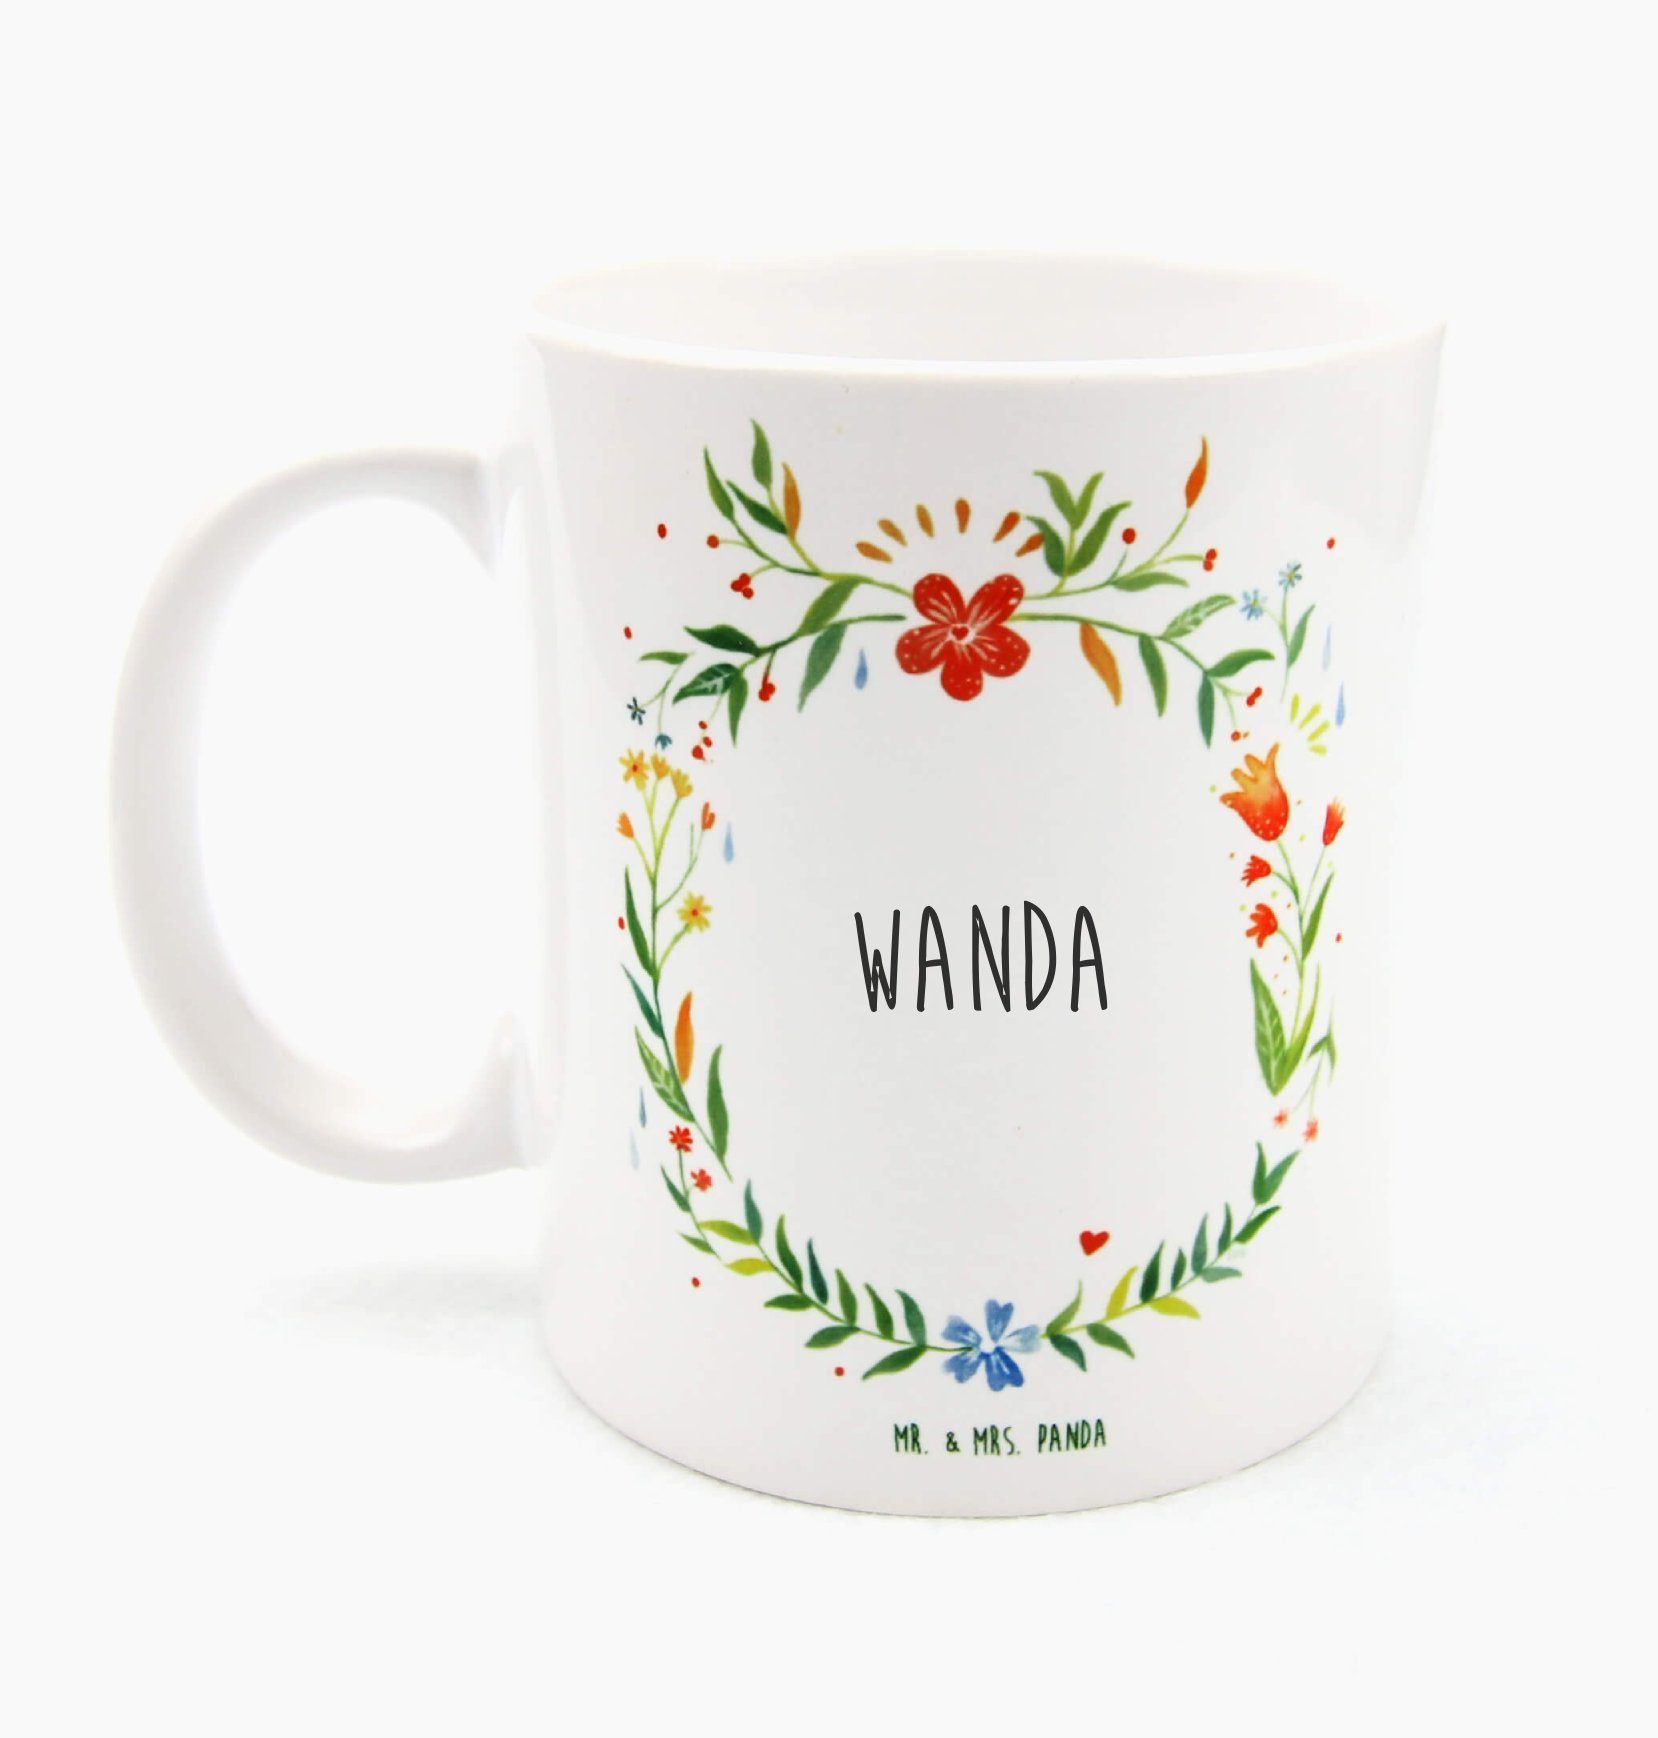 Mr. & Mrs. Panda Tasse Wanda - Geschenk, Becher, Geschenk Tasse, Kaffeebecher, Teetasse, Por, Keramik